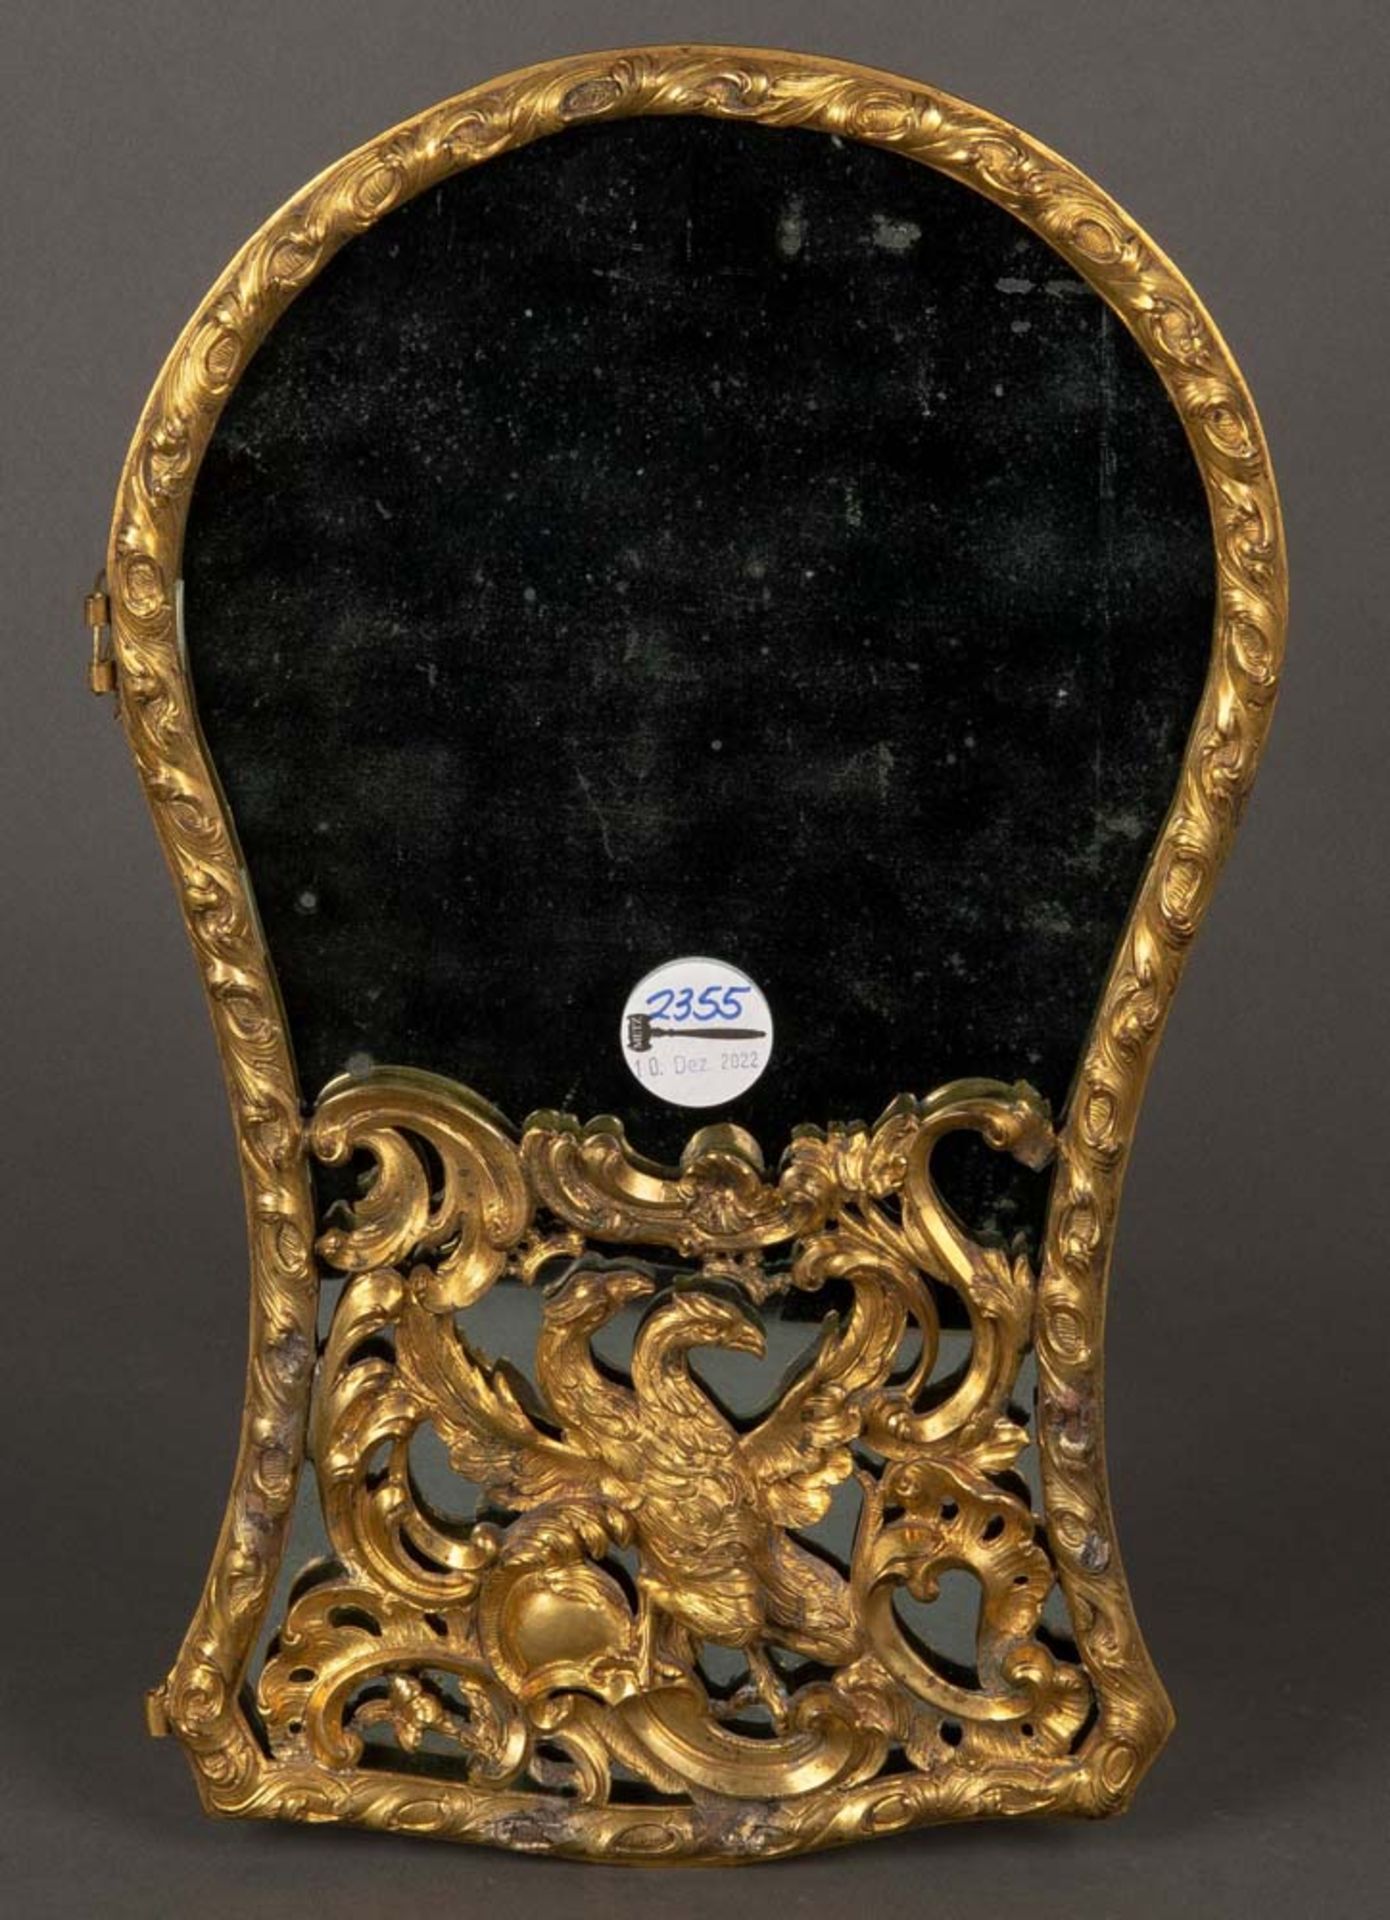 Verspiegelte Tischuhr-Tür. Frankreich 18. Jh. Feuervergoldete Bronze, H=39 cm, B=24 cm. **